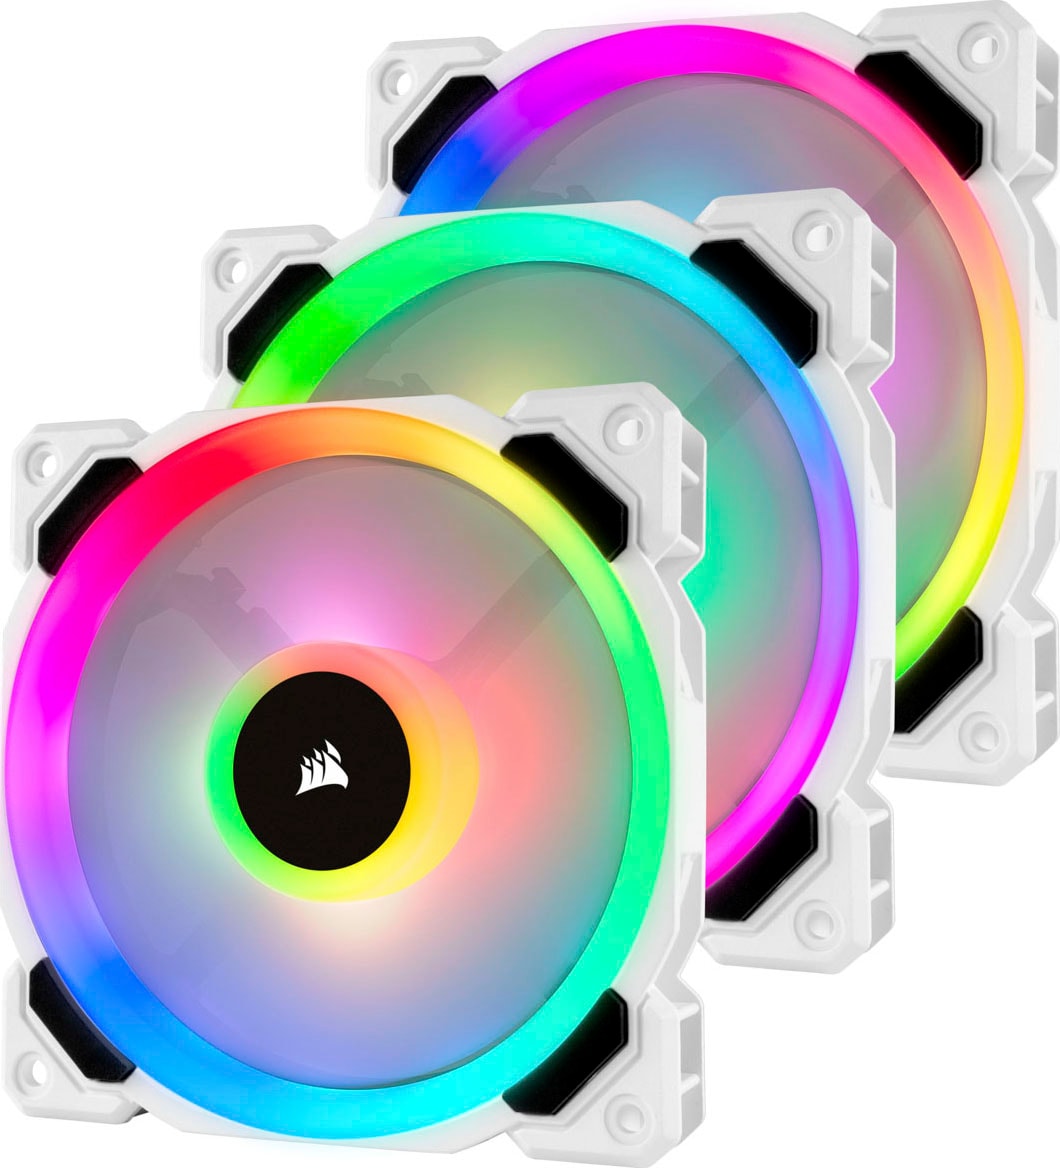 Corsair Gehäuselüfter »LL120 RGB, 120-mm-RGB-LED-Lüfter, Dreierpack mit Lighting Node PRO«